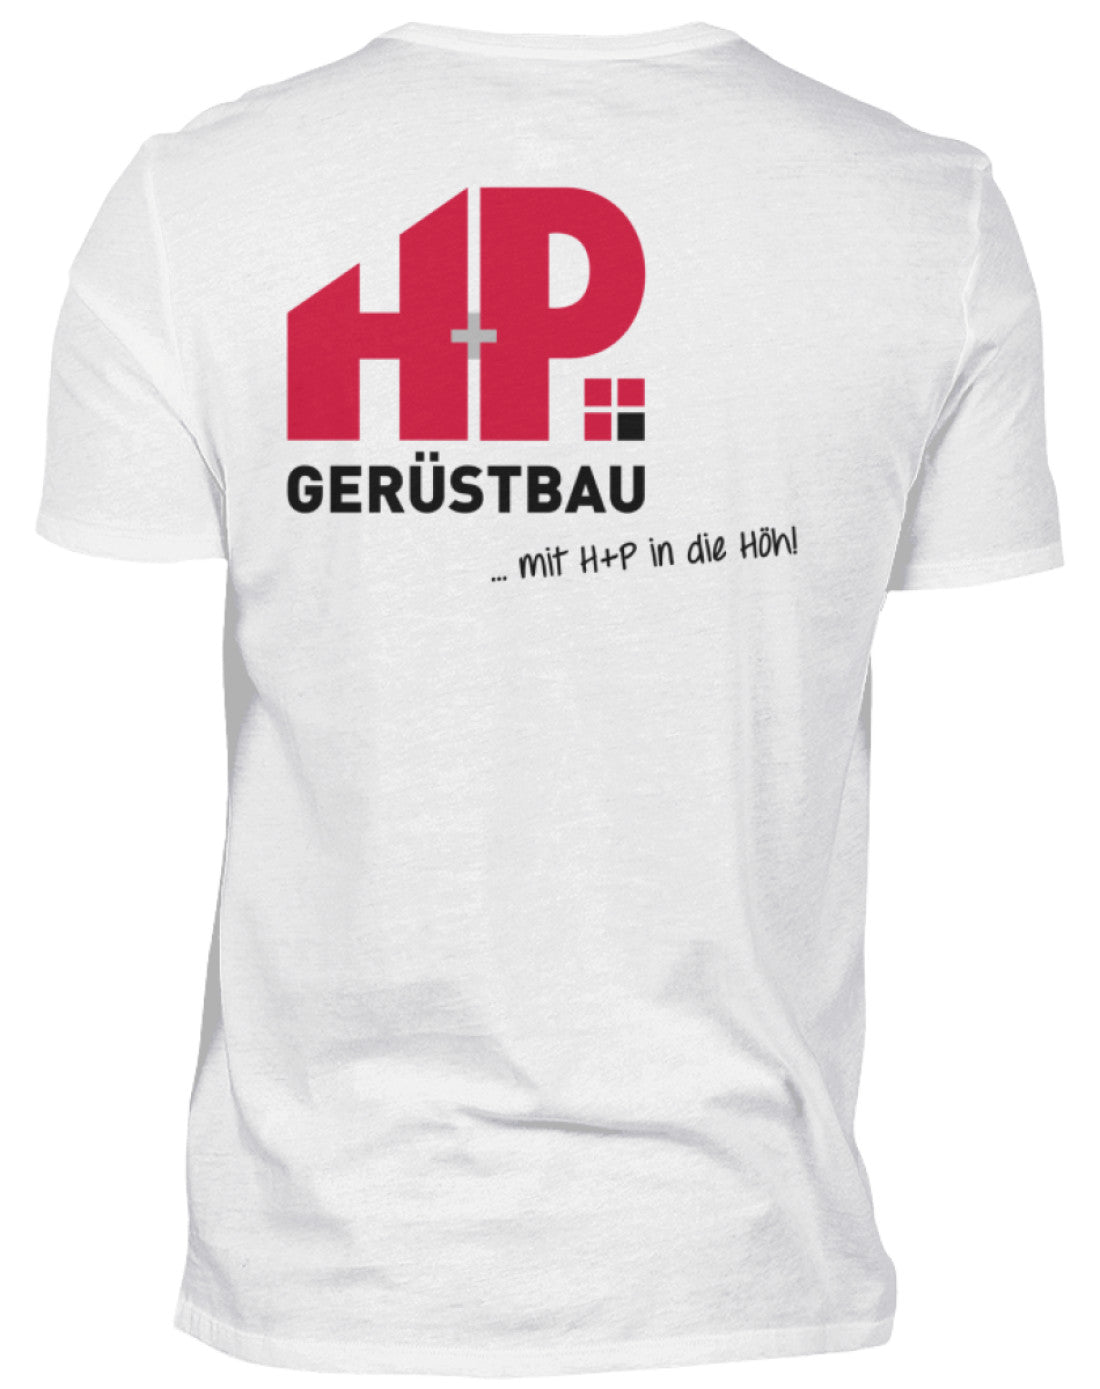 H+P Gerüstbau  - Herren Shirt €24.95 Gerüstbauer - Shop >>